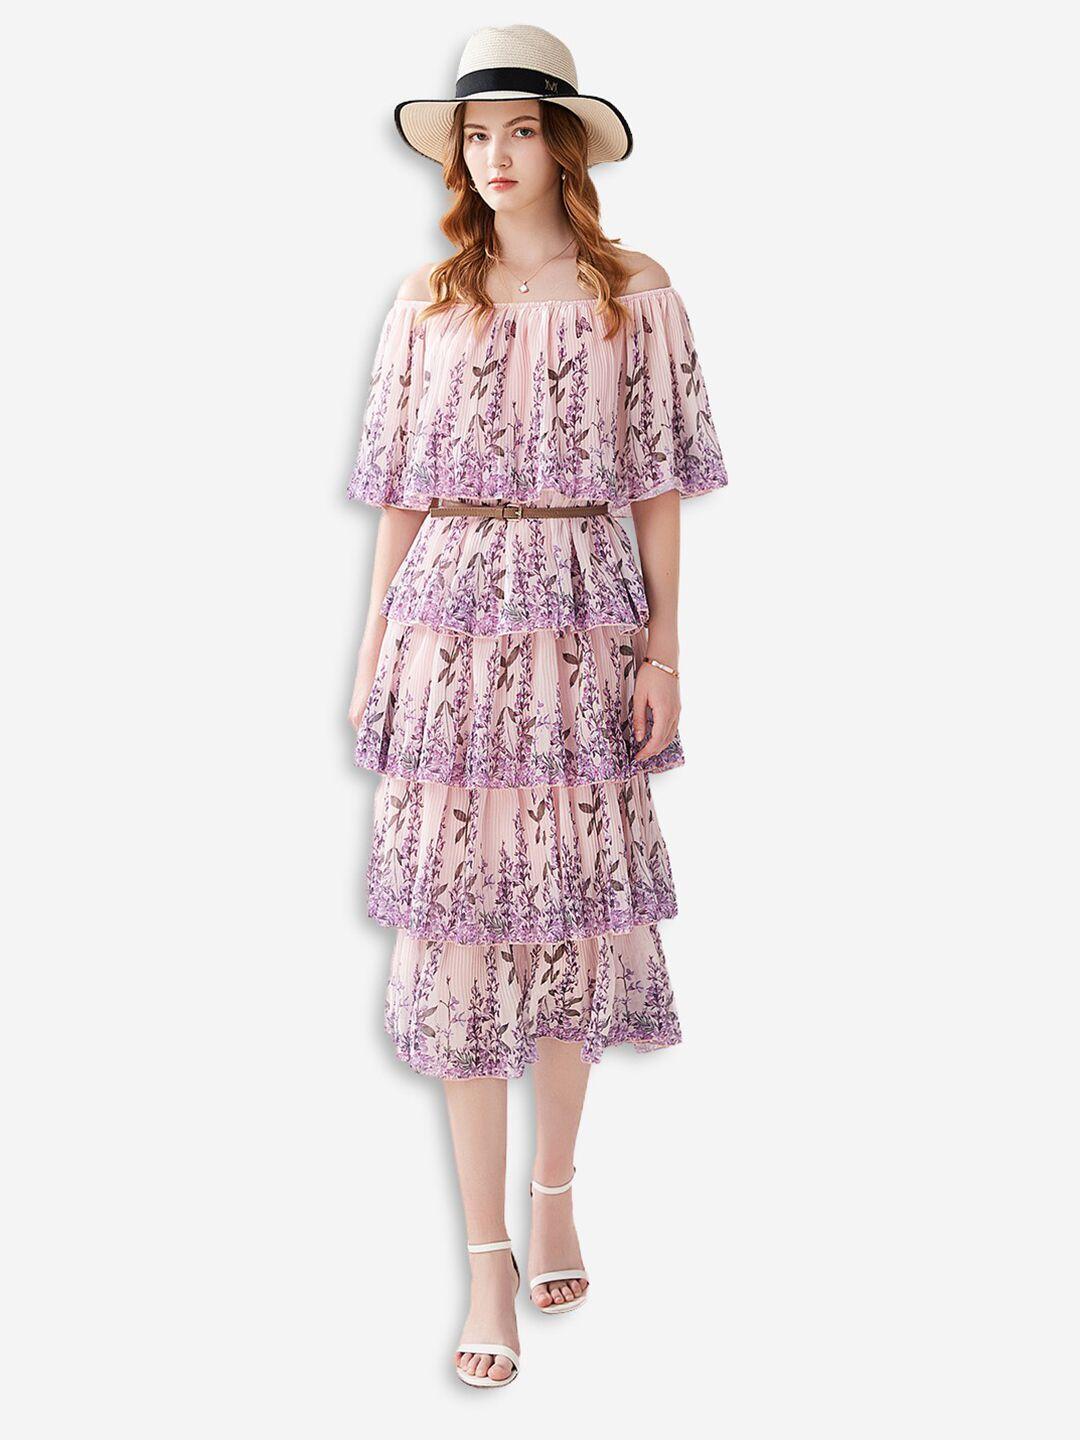 jc collection pink floral off-shoulder blouson dress